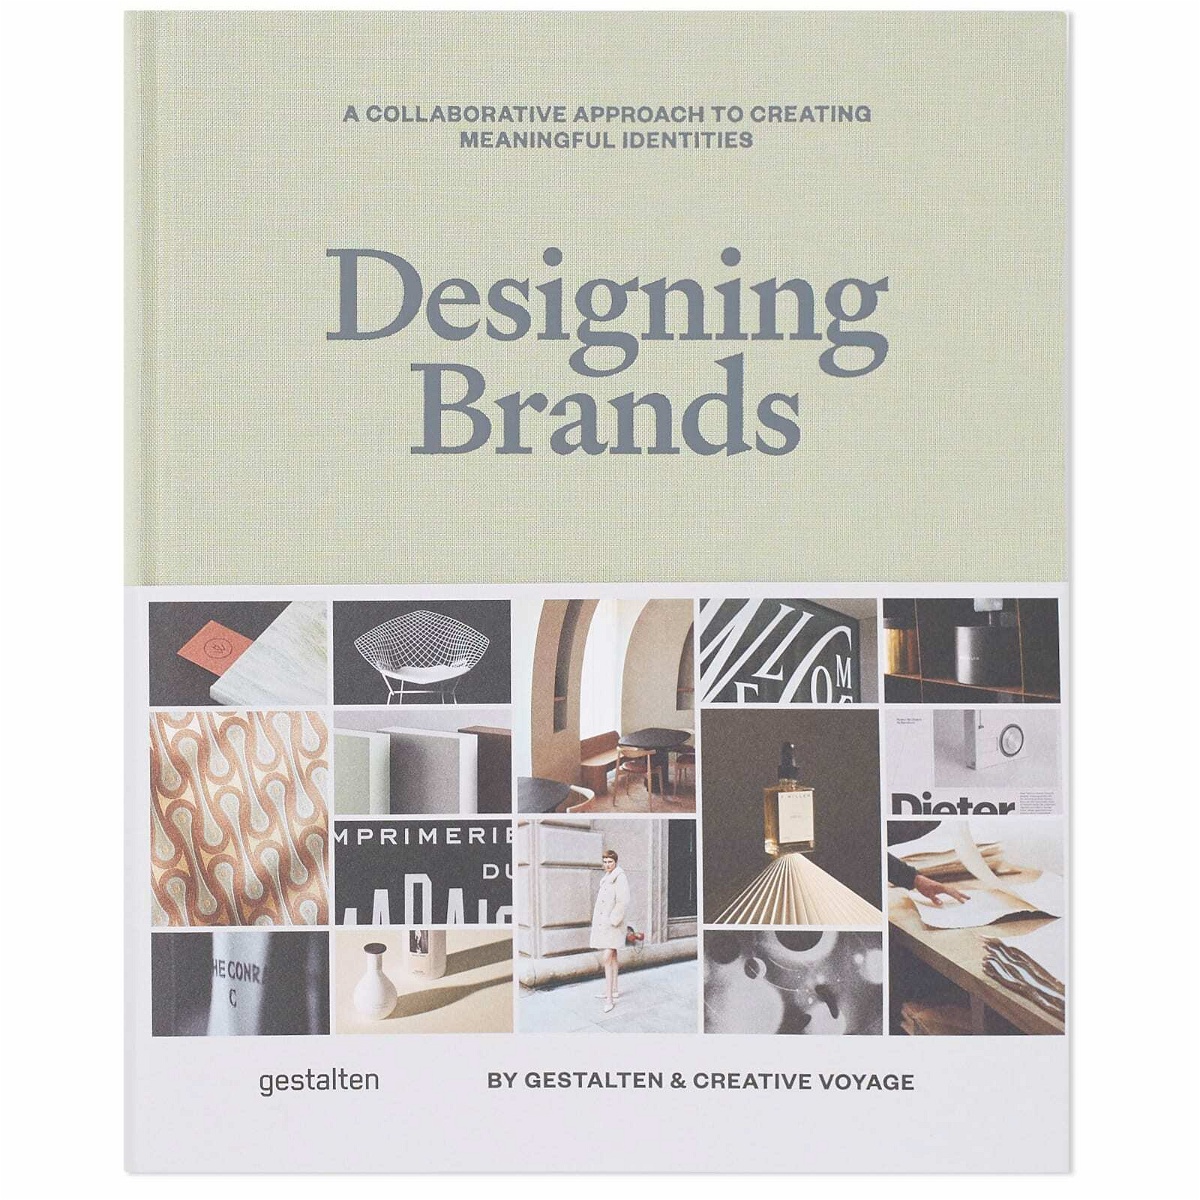 Photo: Gestalten Designing Brands in Gestalten/Creative Voyage